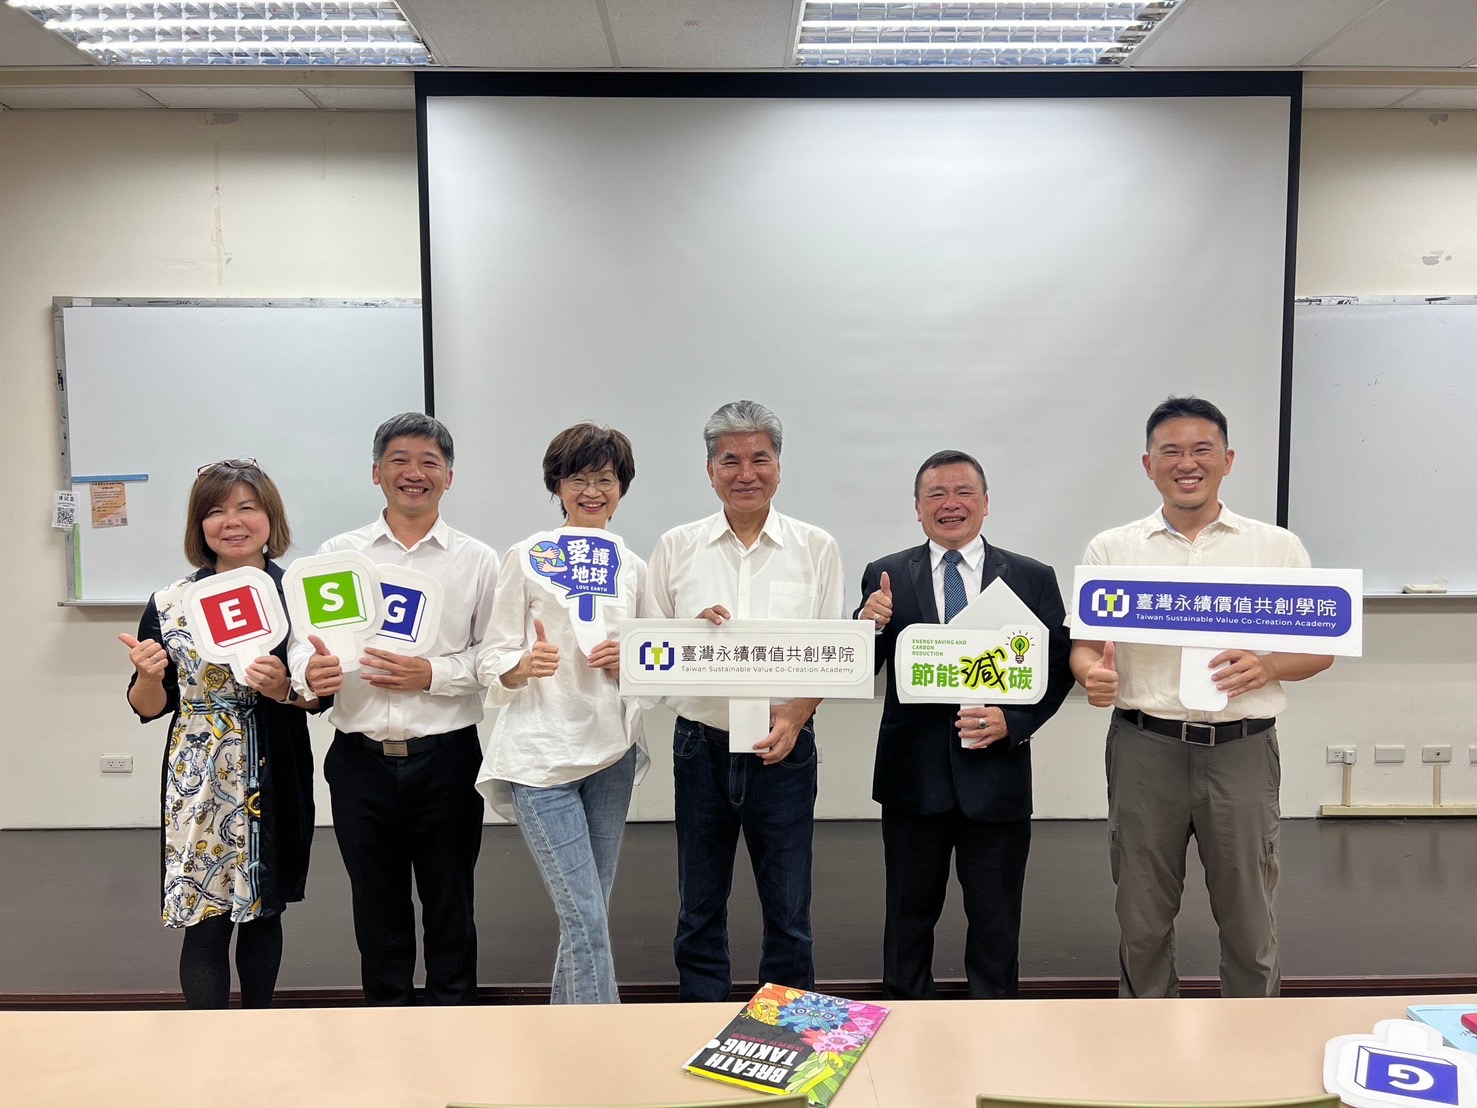 「經濟部iPAS淨零碳規劃管理師研訓班」 台灣永續價值共創學院辦理學員收穫超值